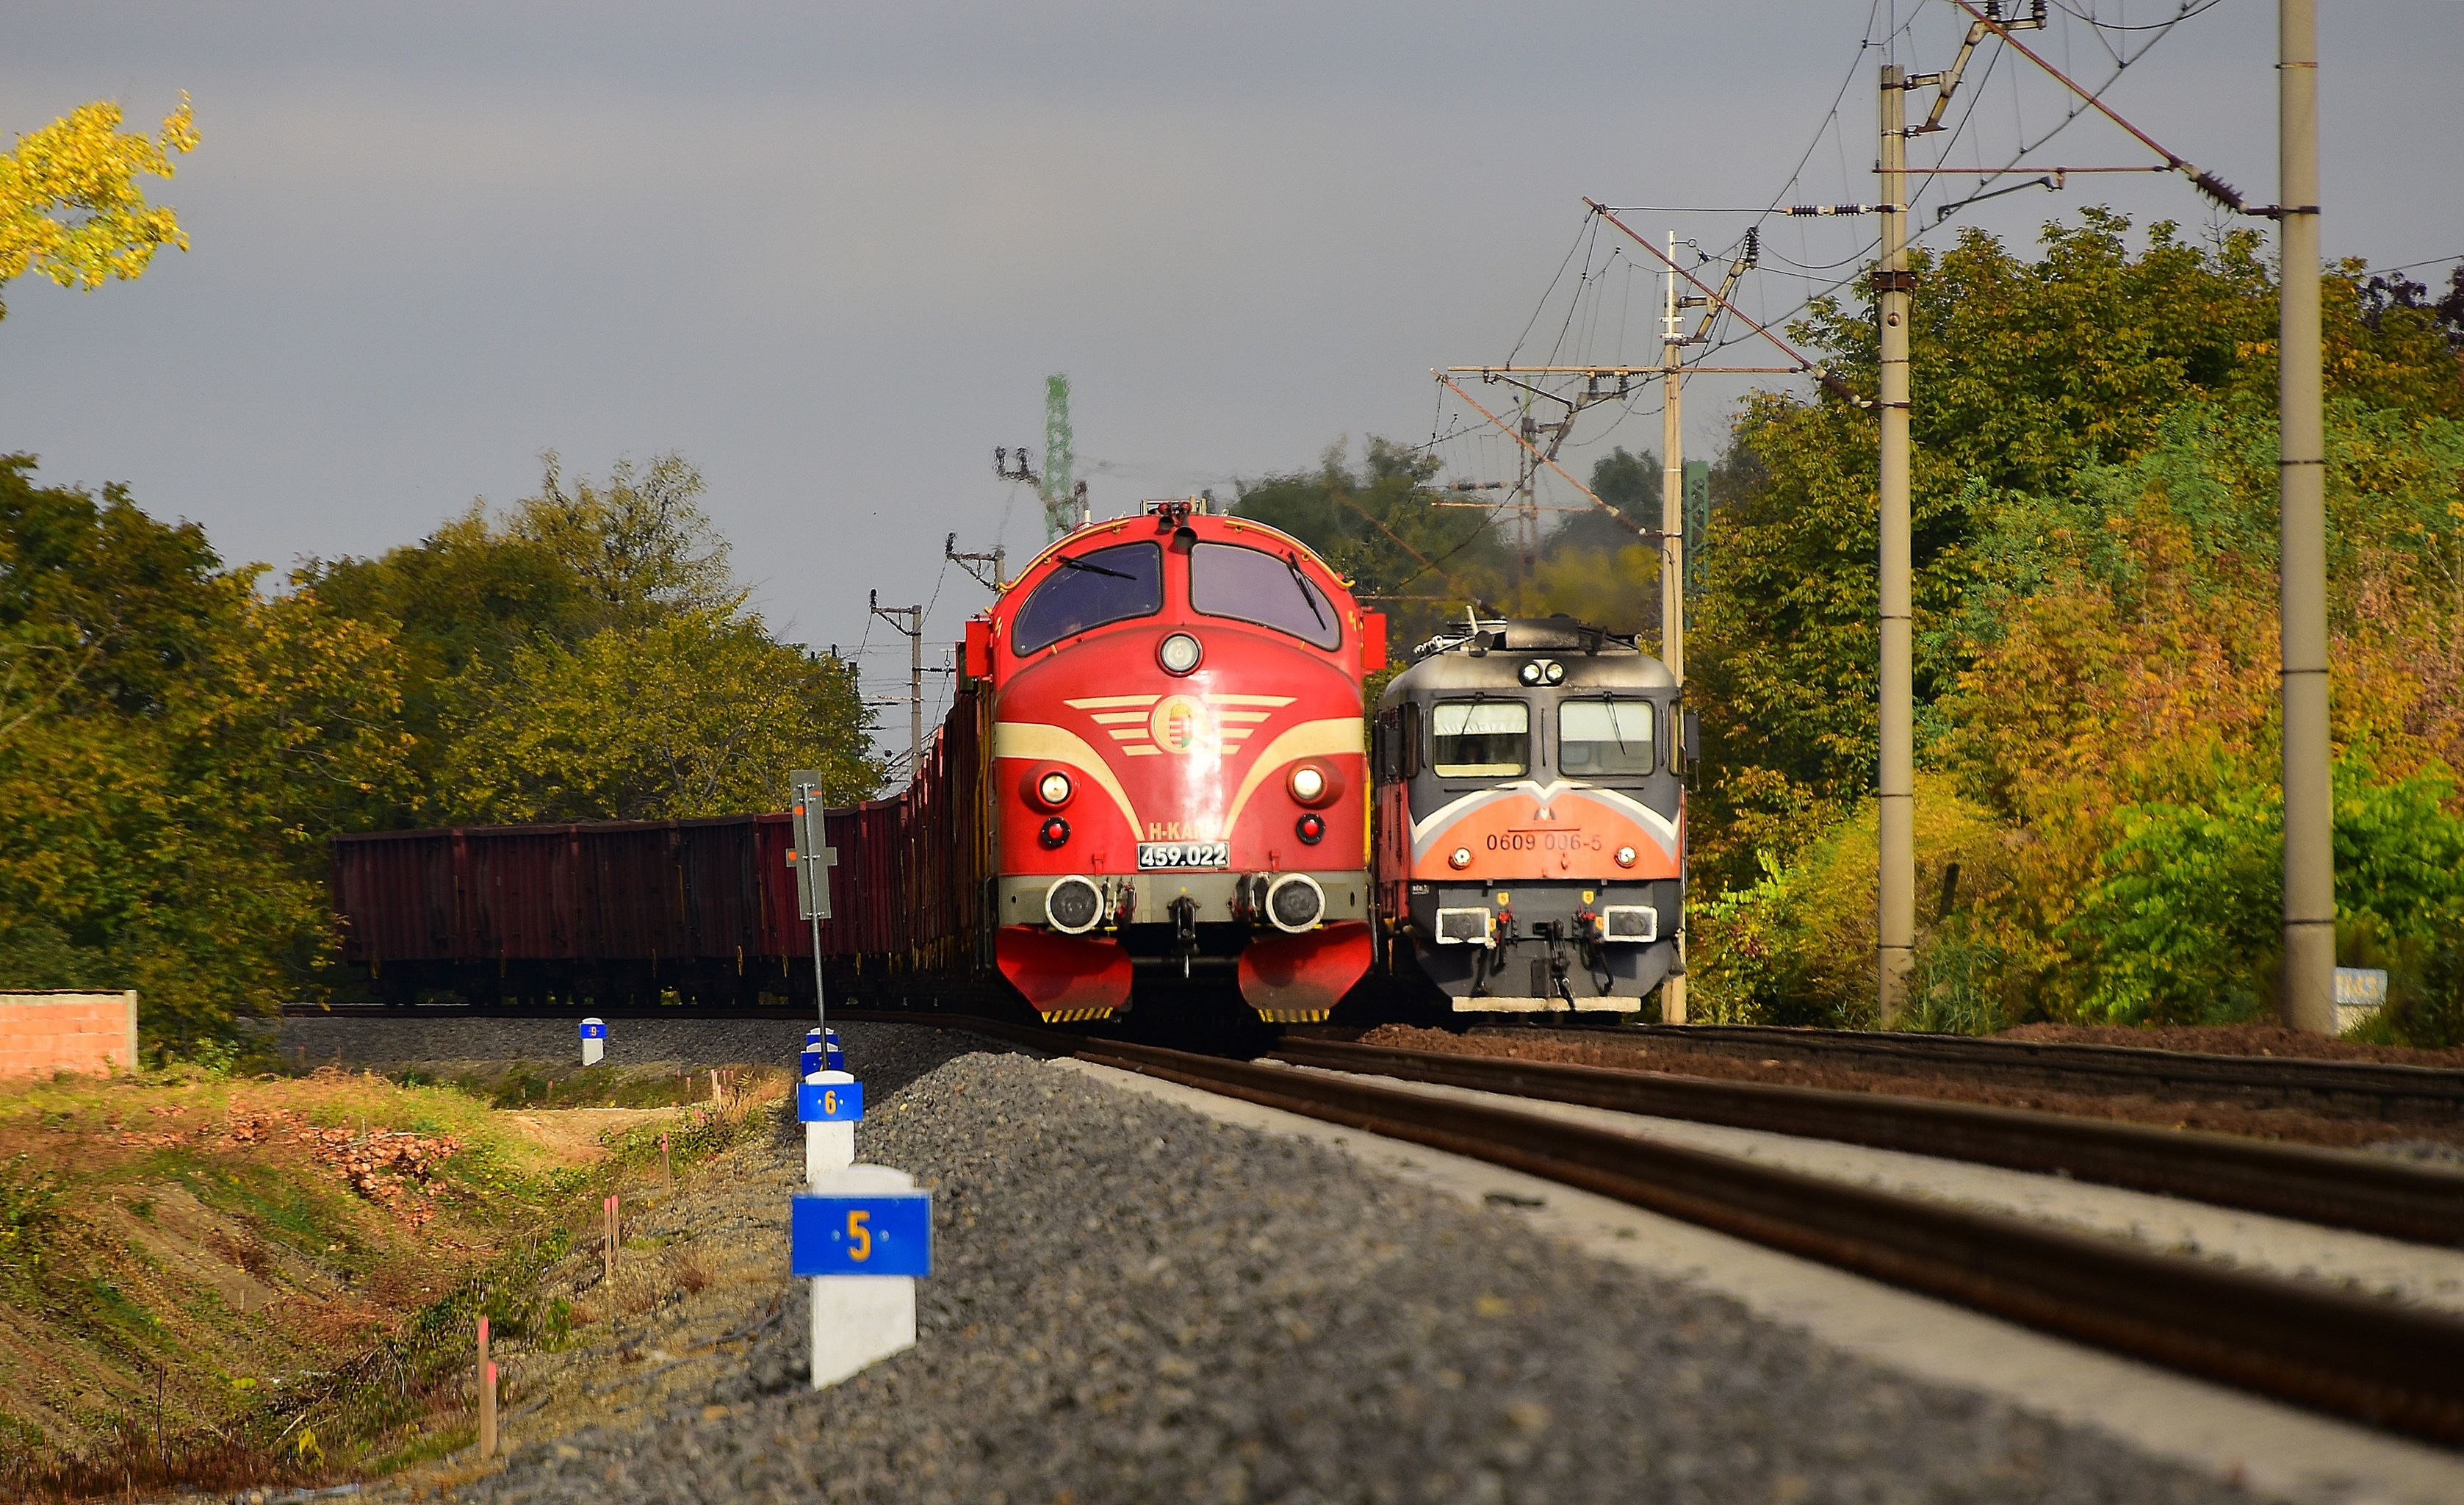 Egyszerre fut be Szegedre a Kárpát Vasút Eas-vonata, és az MMV üres rézanód-szerelvénye Tiszai Szabolcs felvételén, mindkettő dízellel